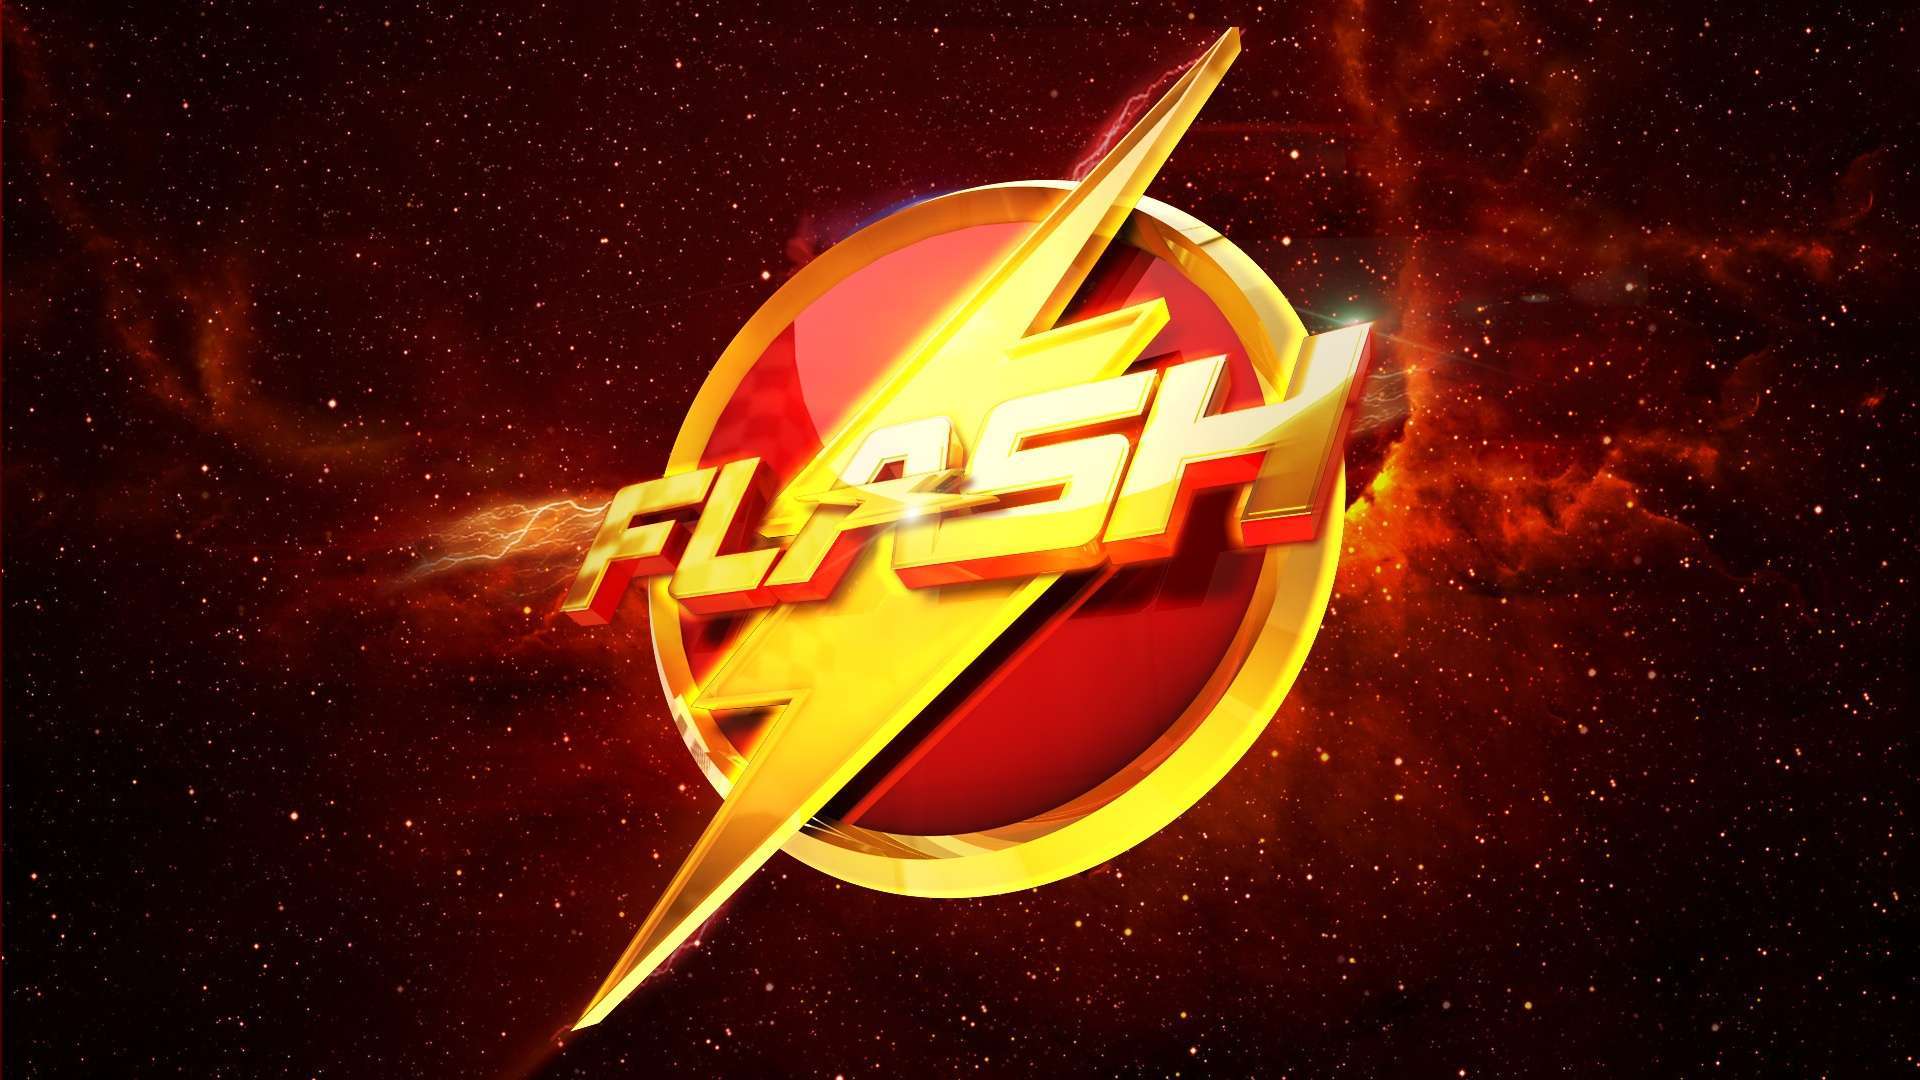 Wallpaper Flash Cw Logo 1080p Upload At December